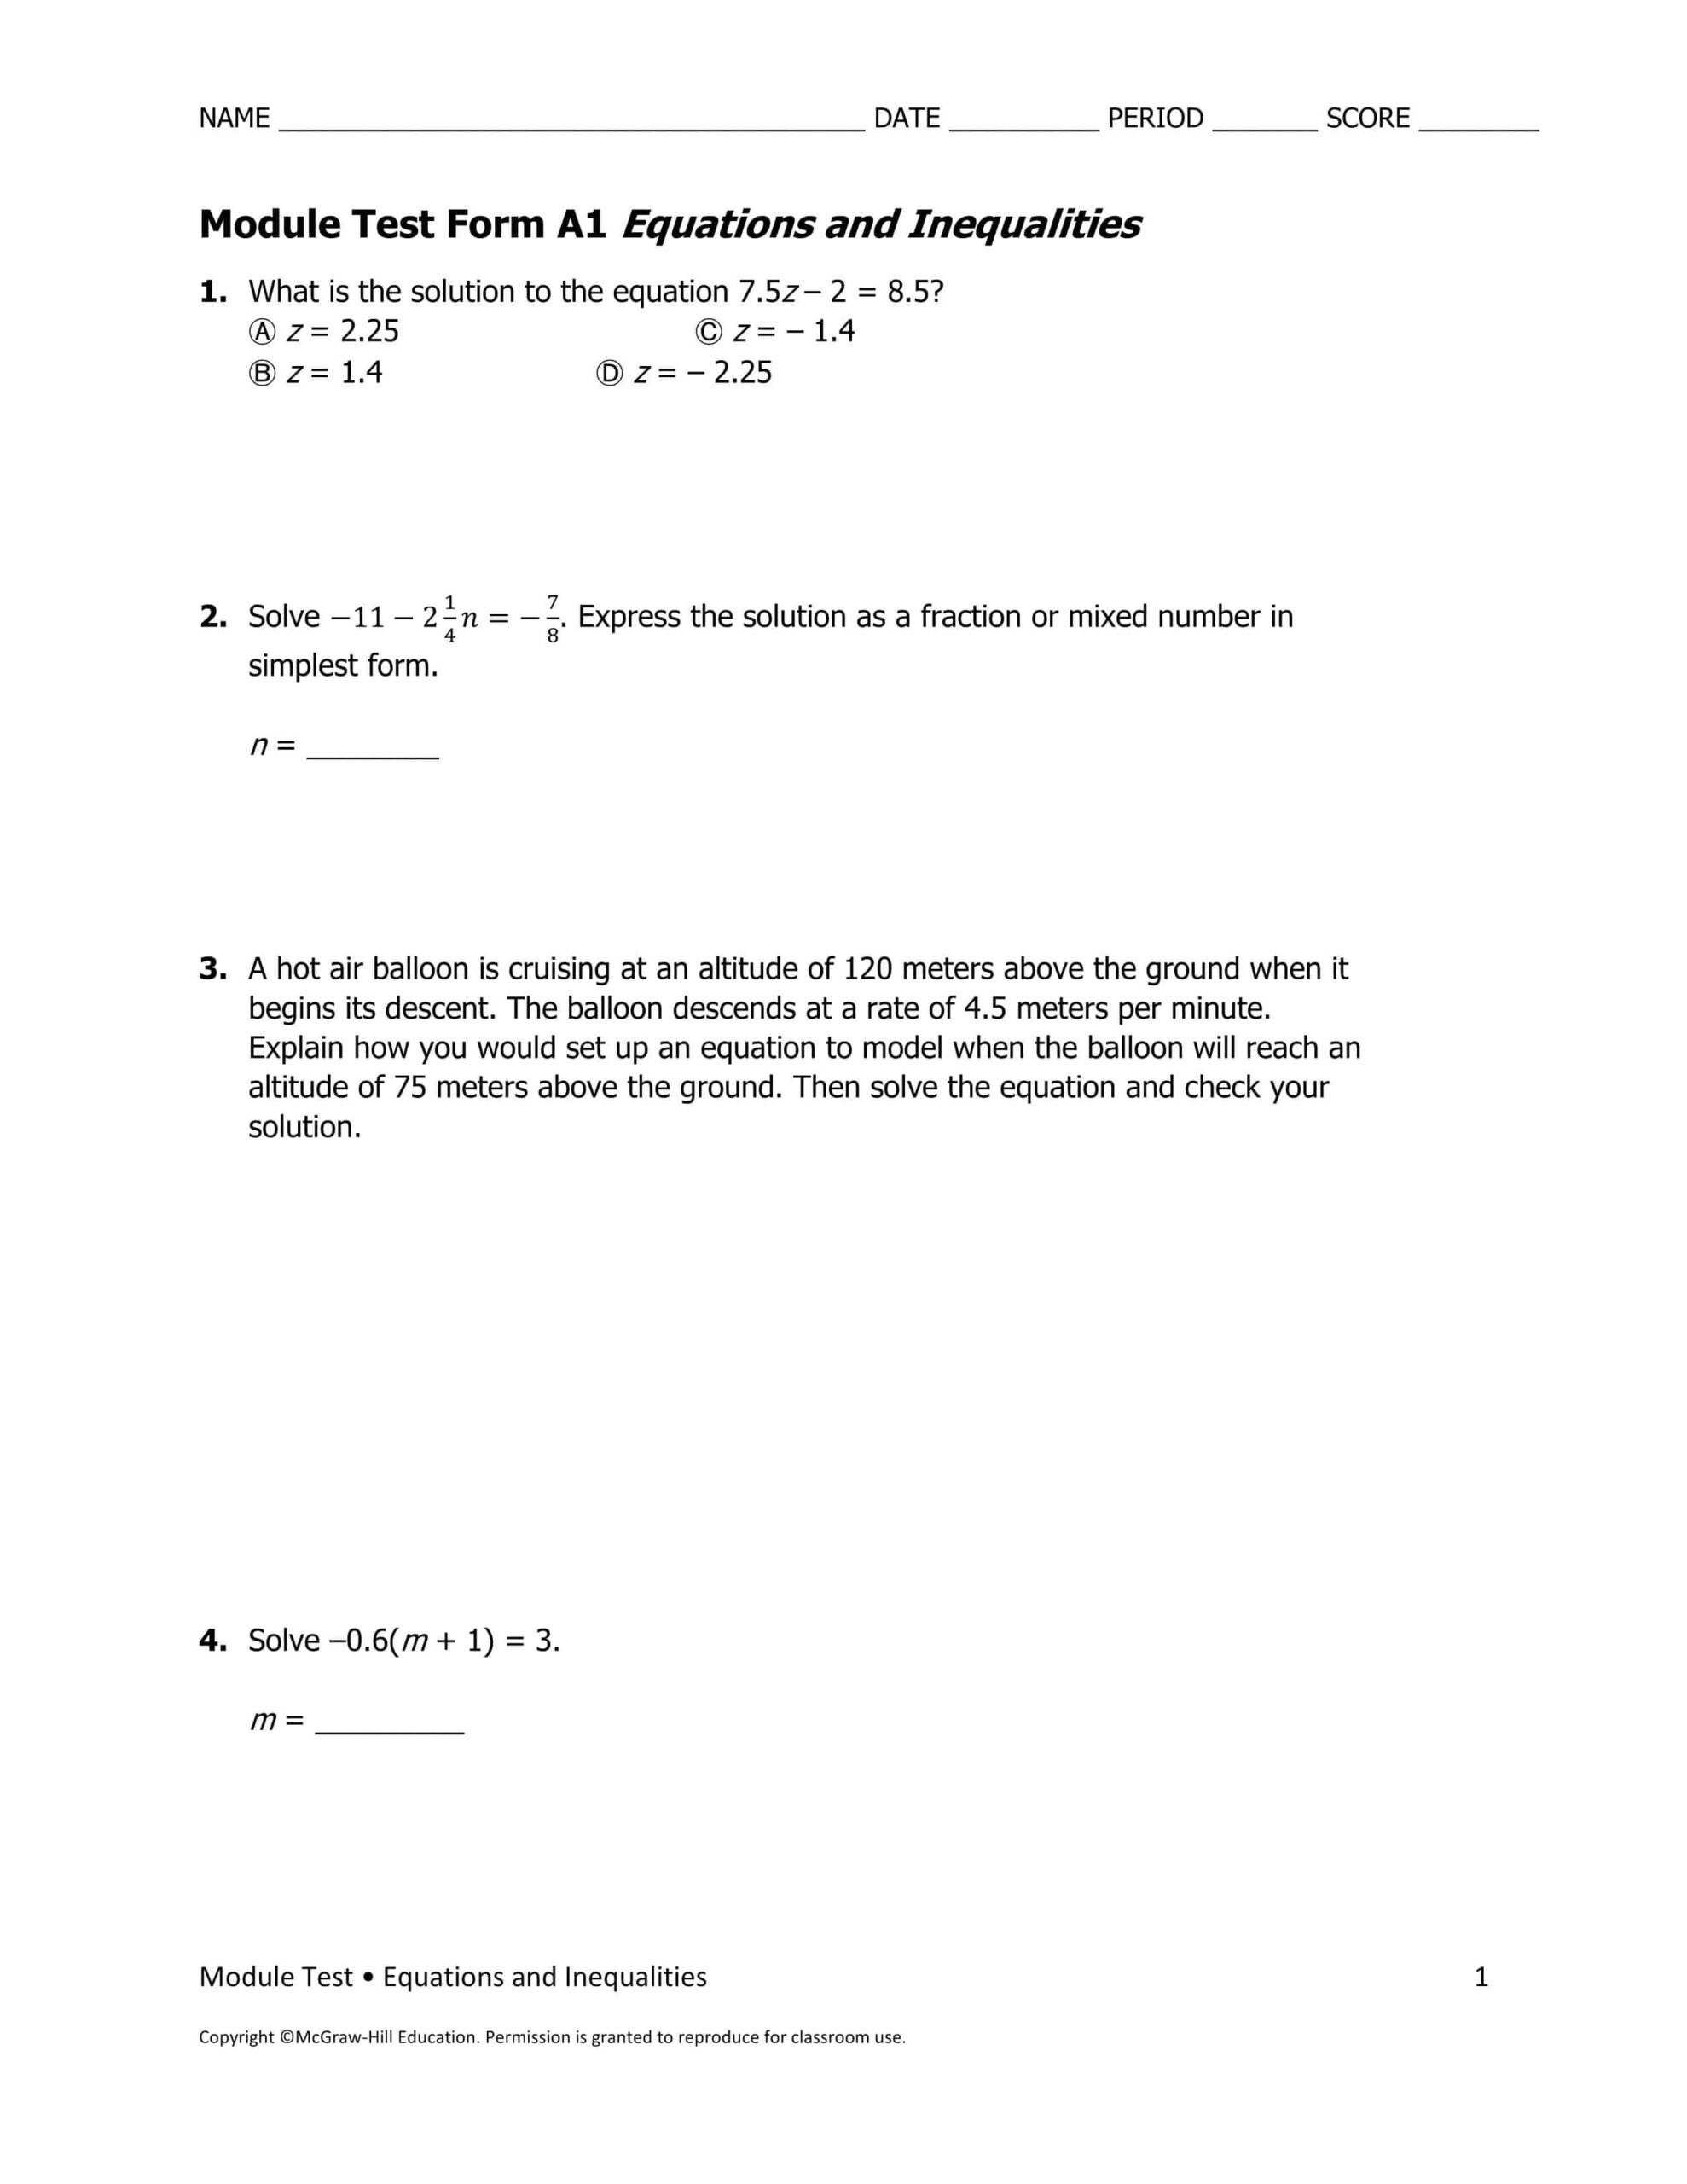 حل أوراق عمل بالإنجليزي الرياضيات المتكاملة الصف السابع نخبة